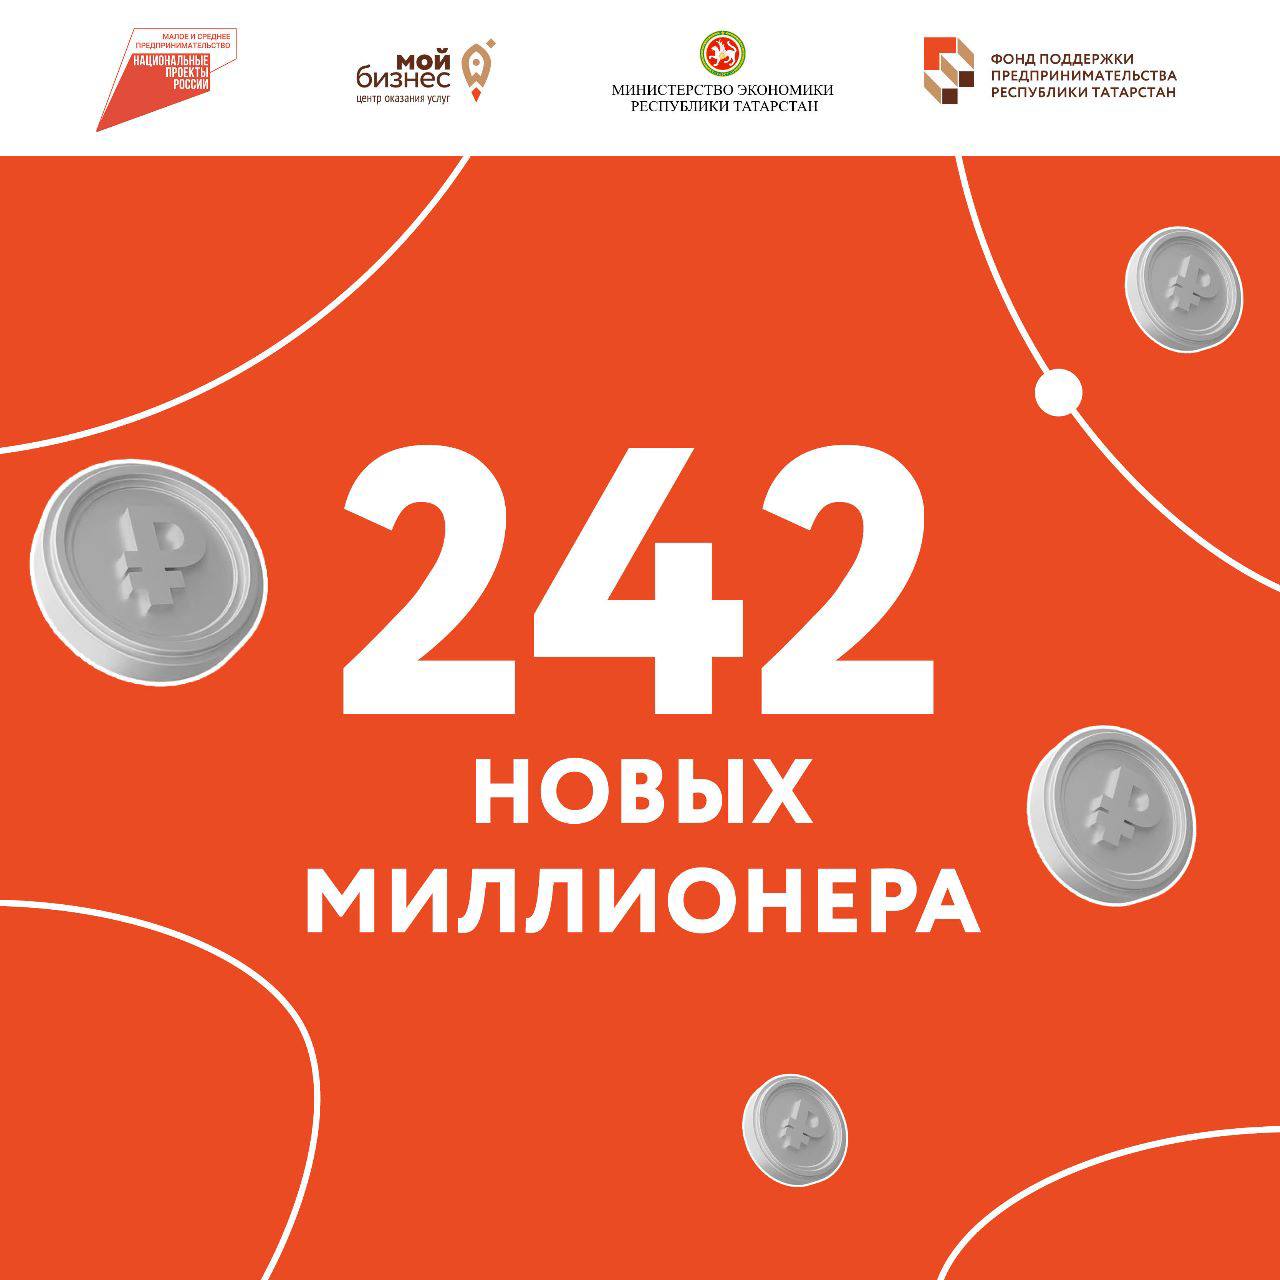 В Татарстане появилось 242 молодых миллионера